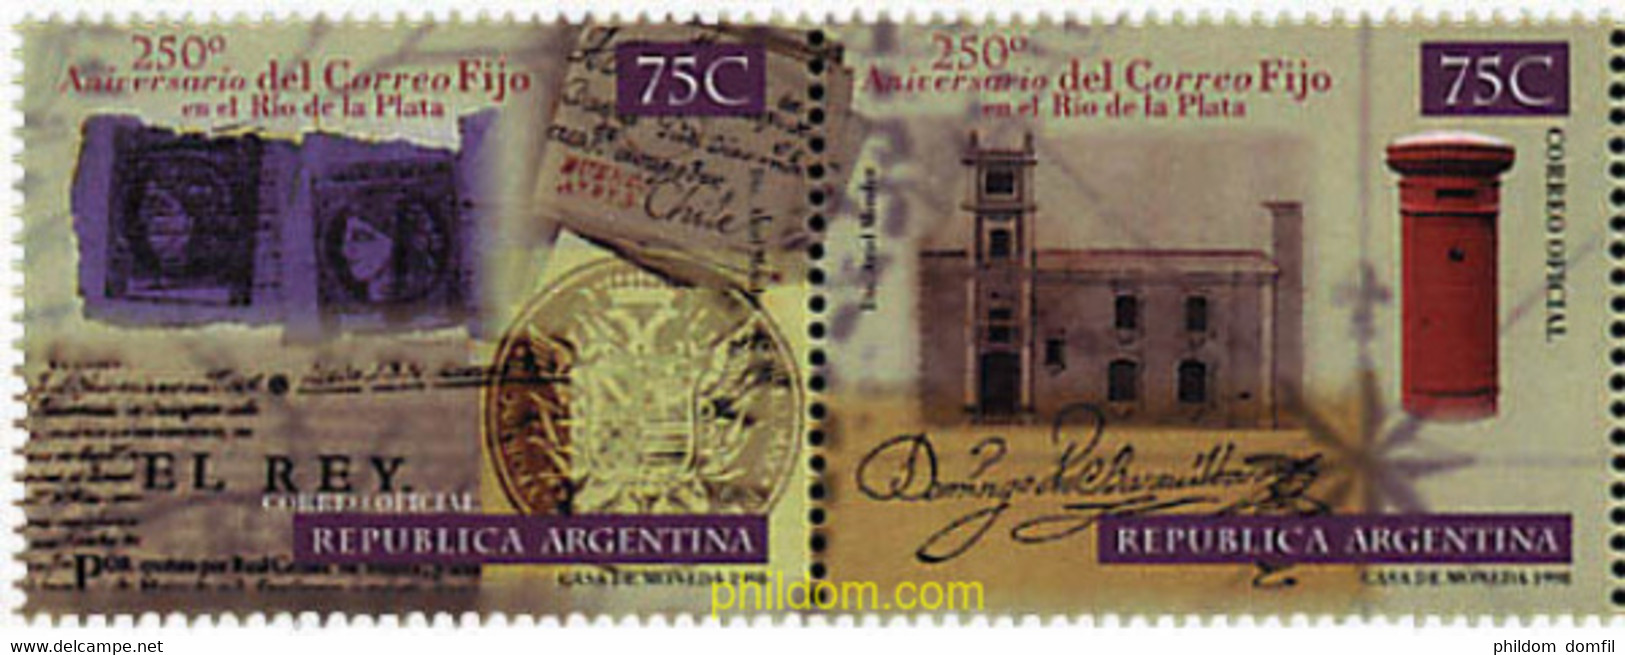 6940 MNH ARGENTINA 1998 250 ANIVERSARIO DEL "CORREO FIJO" EN RIO DE LA PLATA - Gebraucht